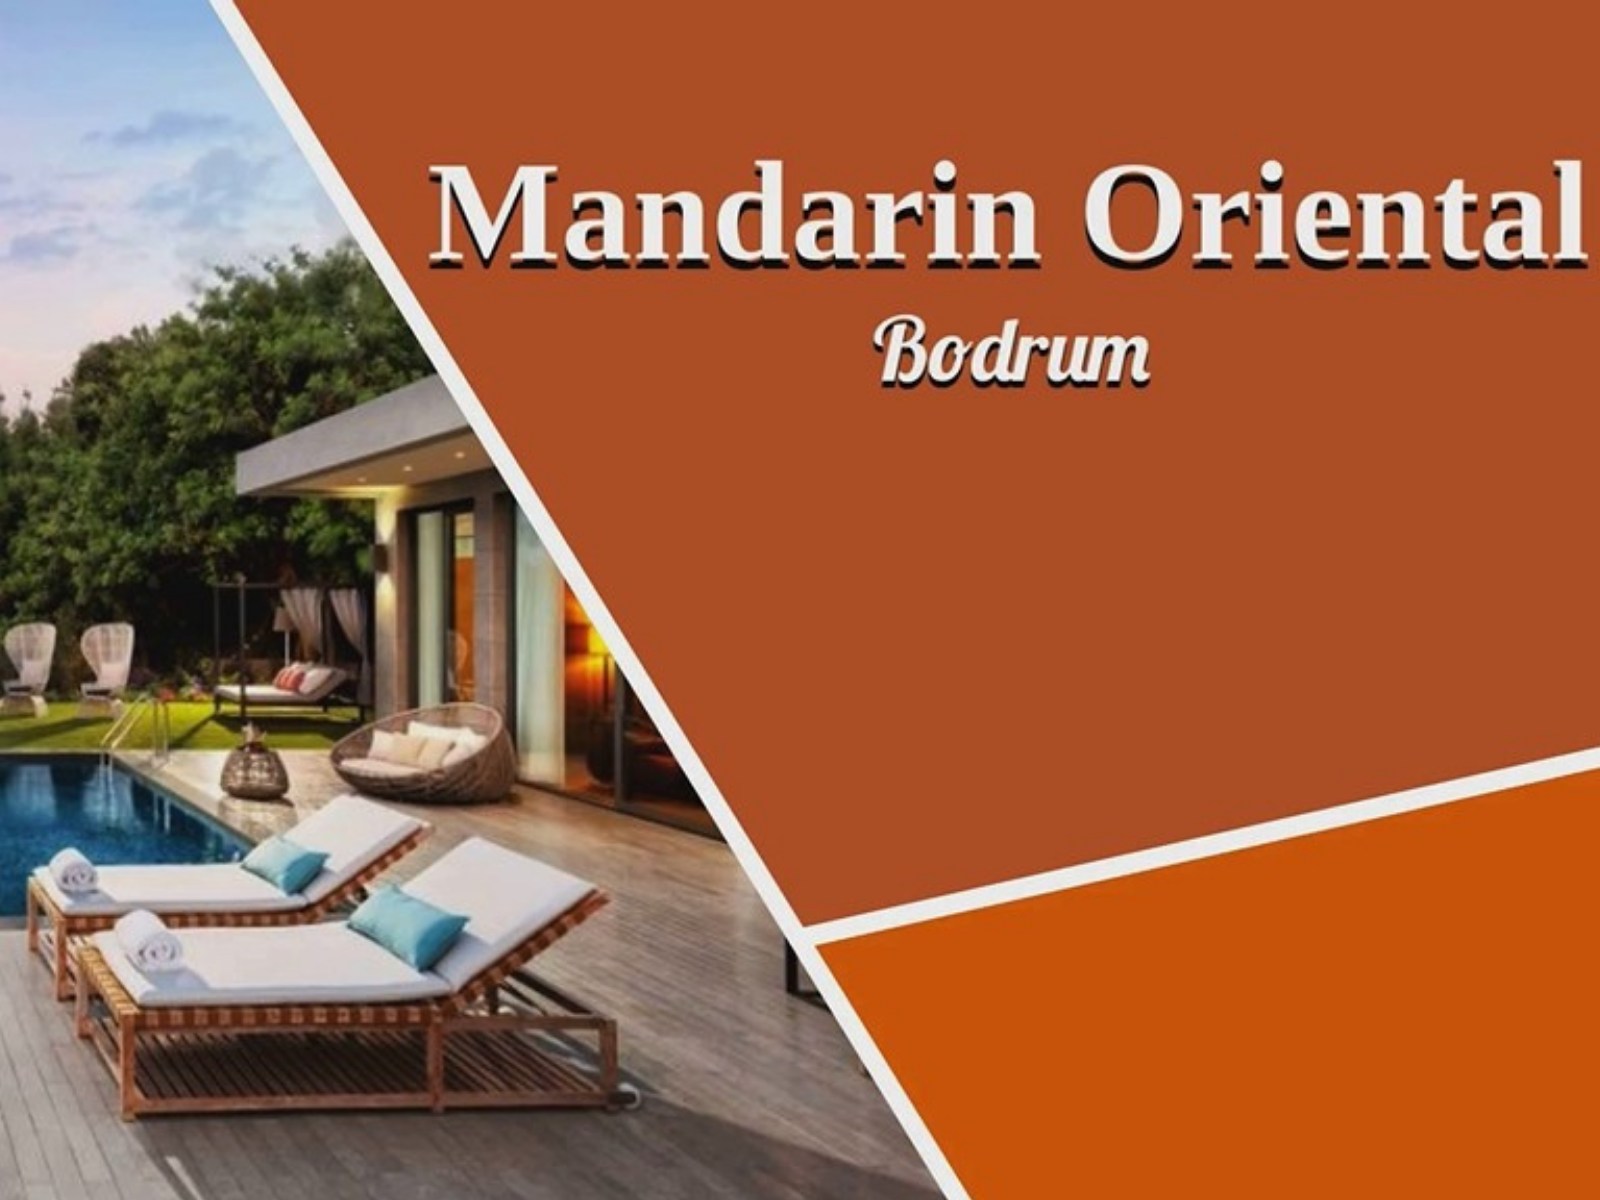 Madarin Orienta Bodrum - Turkey - euromic